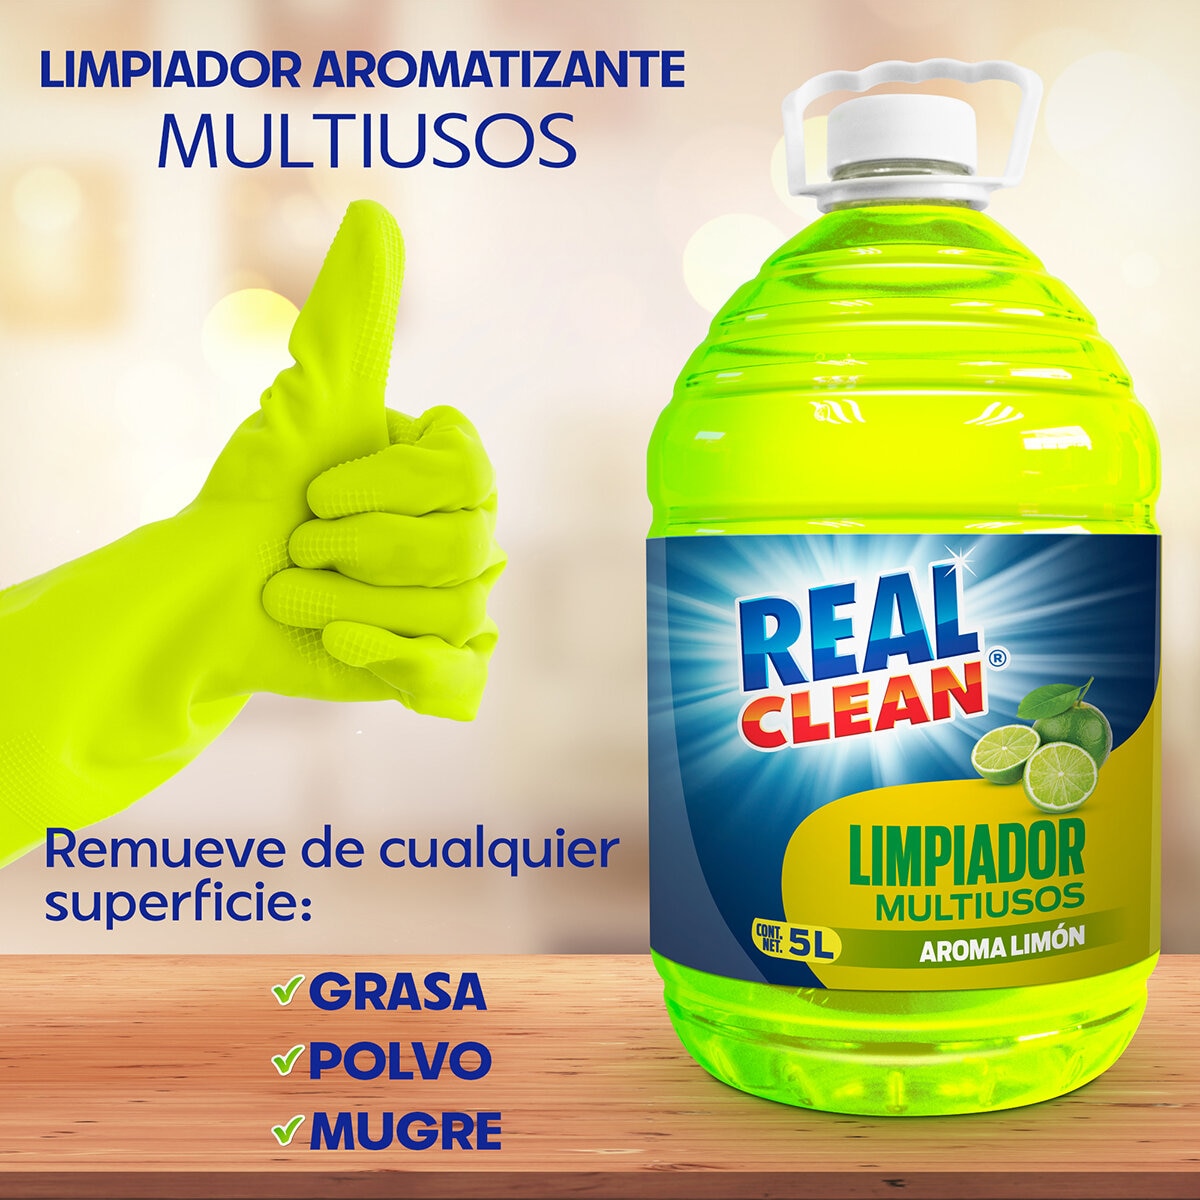 Real Clean Limpiador Multiusos Aroma Limón 5 l